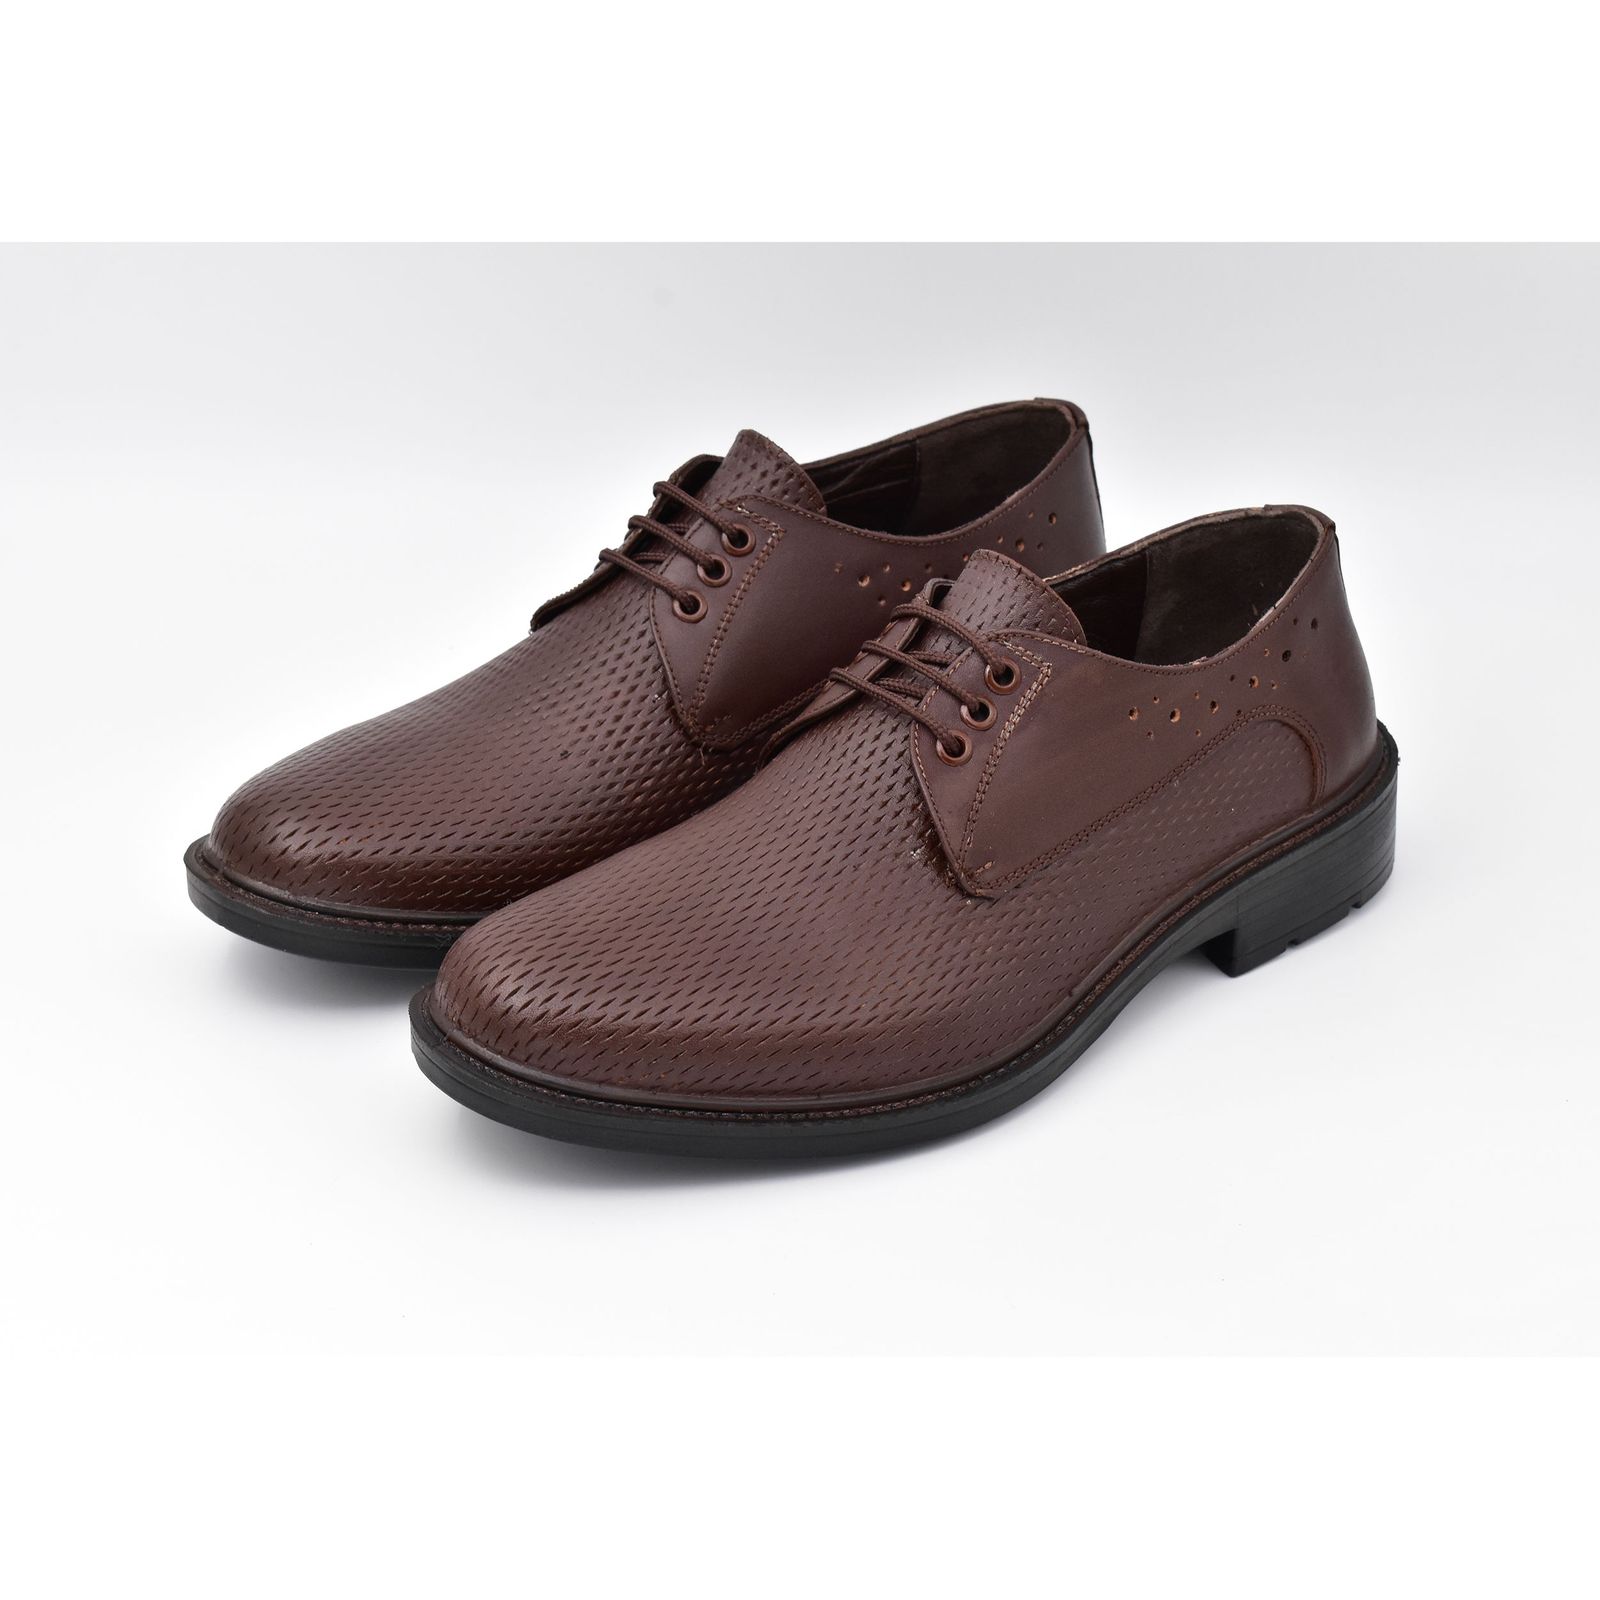 کفش مردانه پاما مدل Morano کد G1183 -  - 4